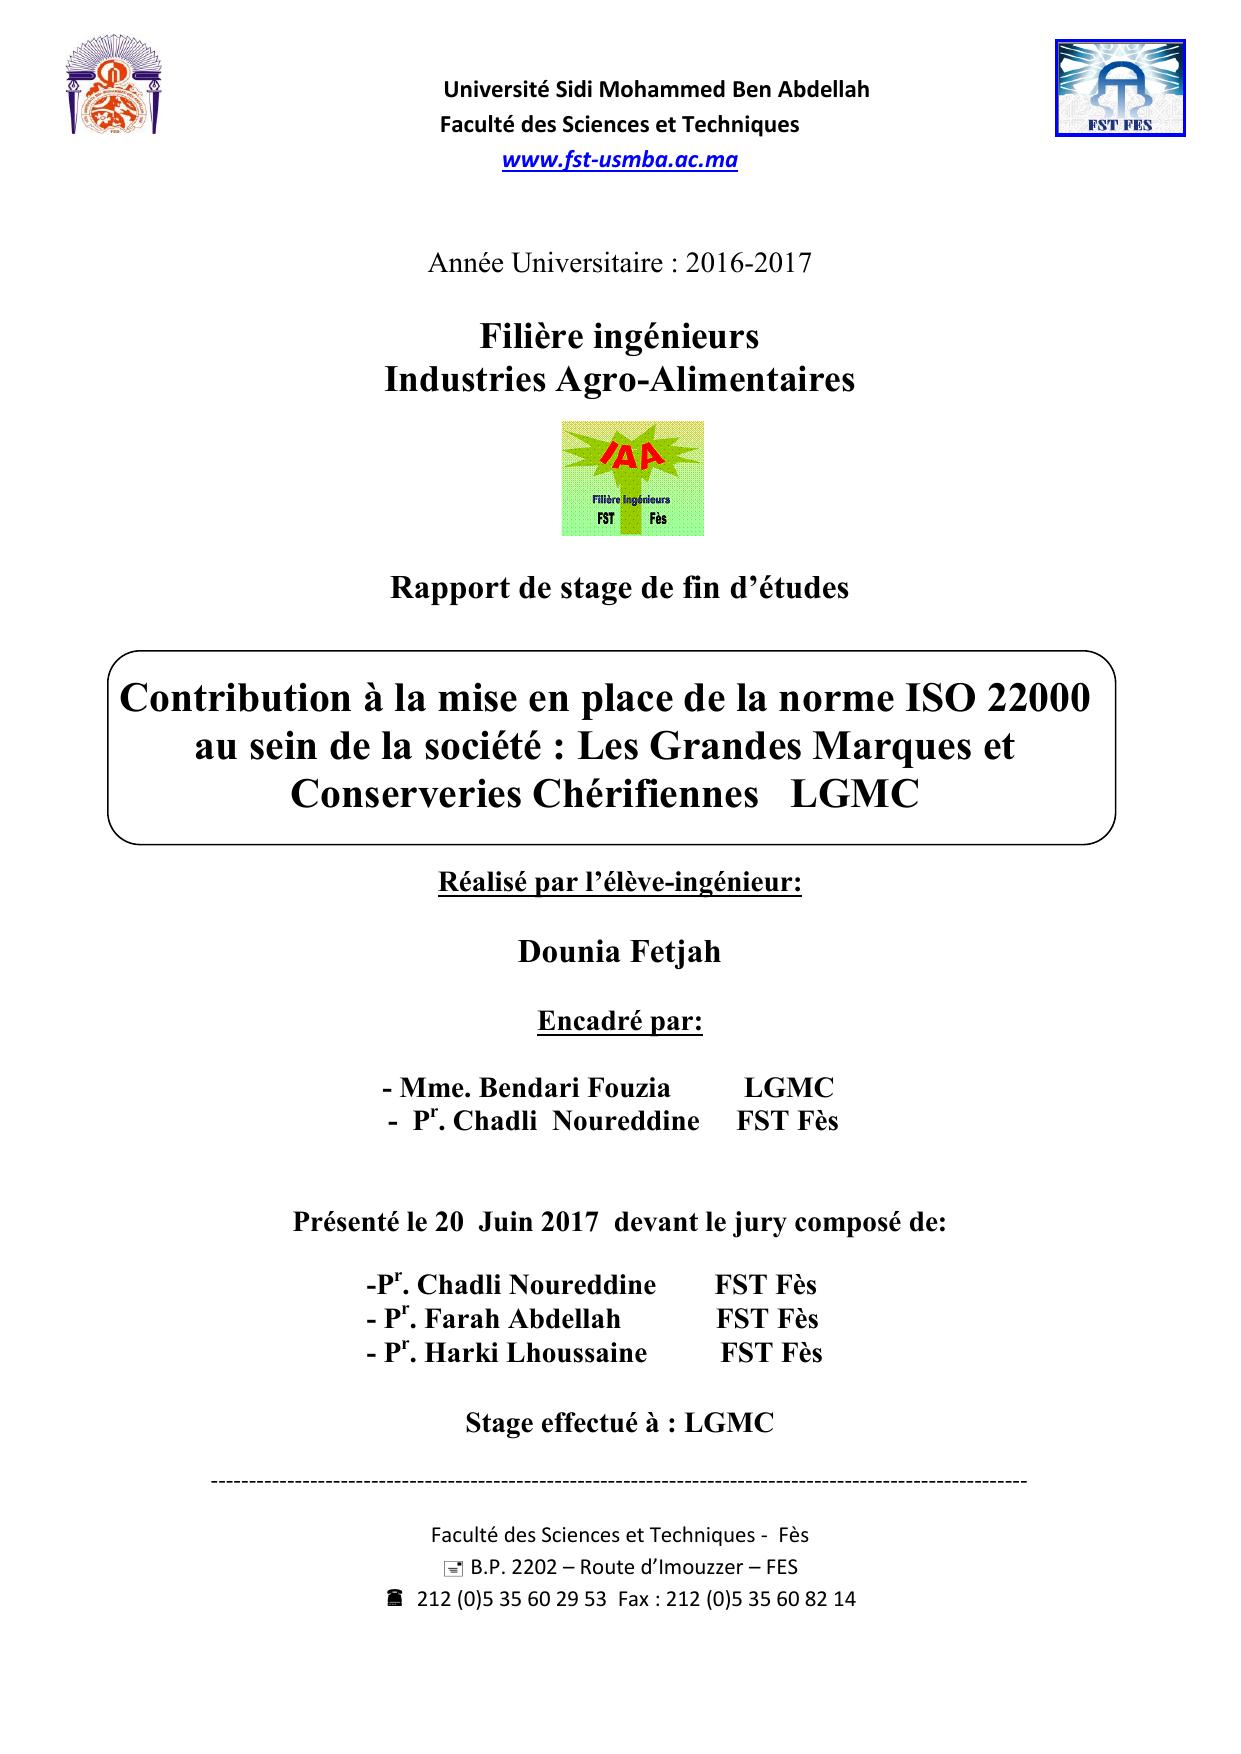 Contribution à la mise en place de la norme ISO 22000 au sein de la société : Les Grandes Marques et Conserveries Chérifiennes LGMC